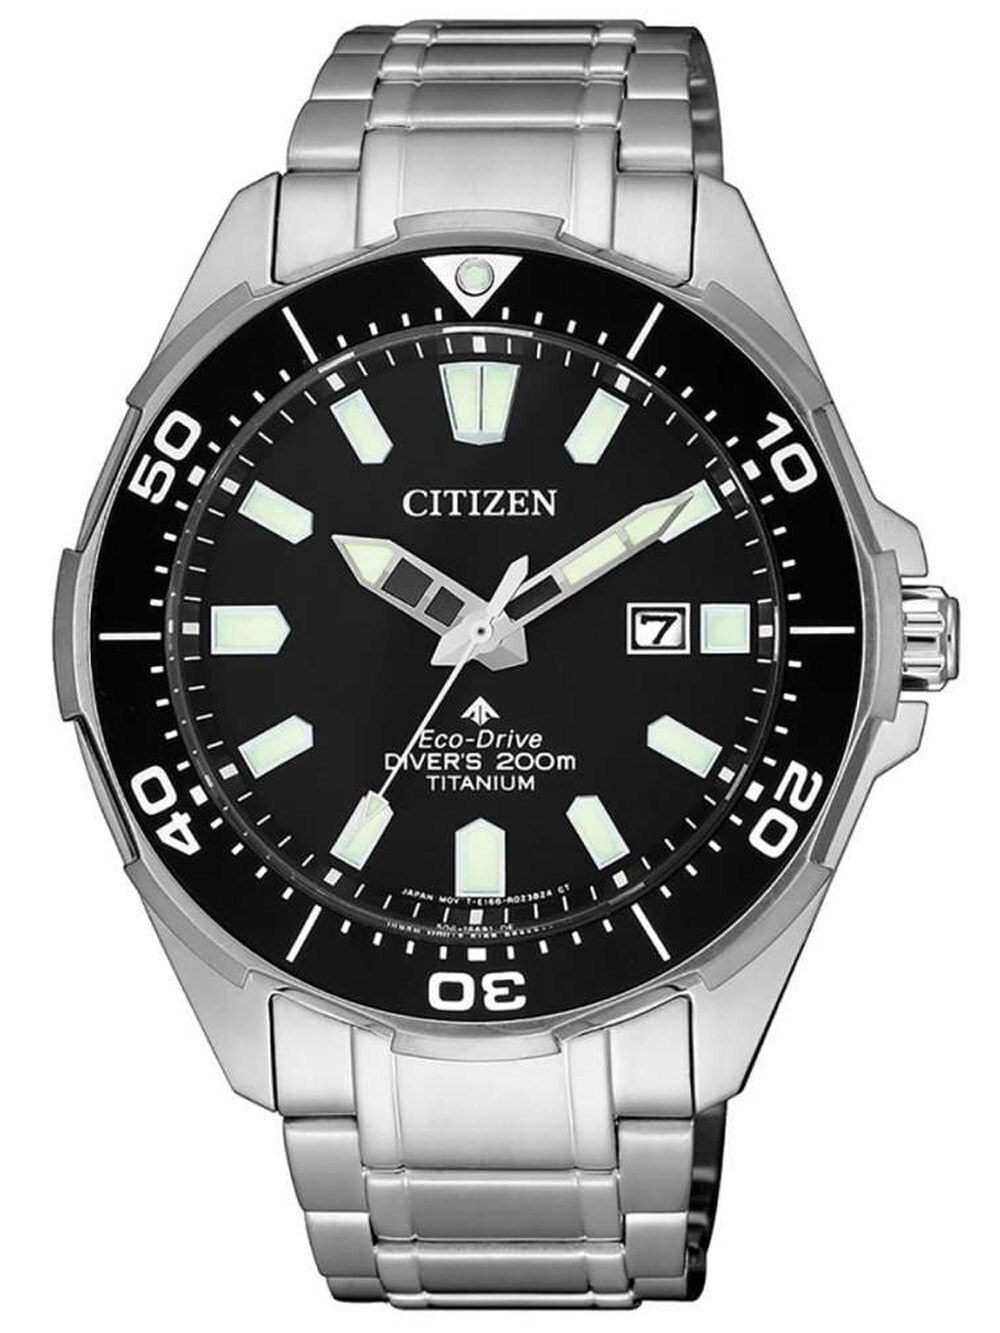 Мужские наручные часы с серебряным браслетом Citizen BN0200-81E Eco-Drive Super-Titanium Promaster 44mm 20 ATM